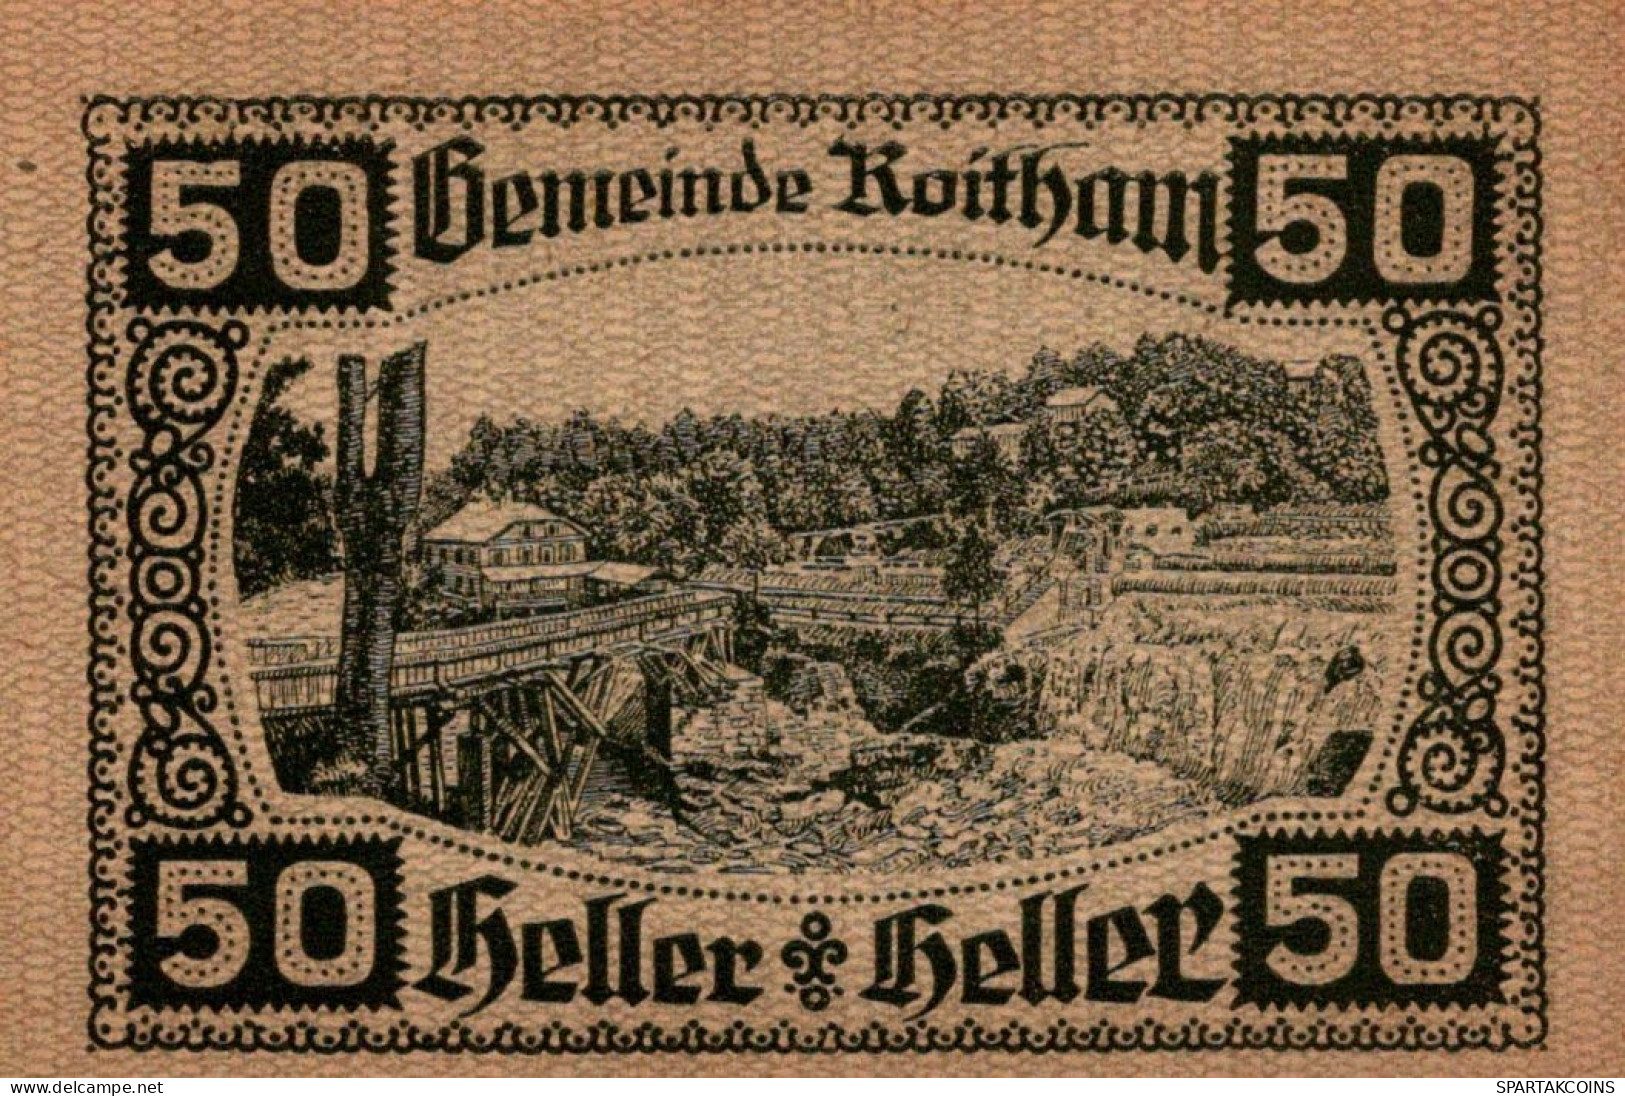 50 HELLER 1920 Stadt ROITHAM Oberösterreich Österreich Notgeld Papiergeld Banknote #PG666 - [11] Local Banknote Issues